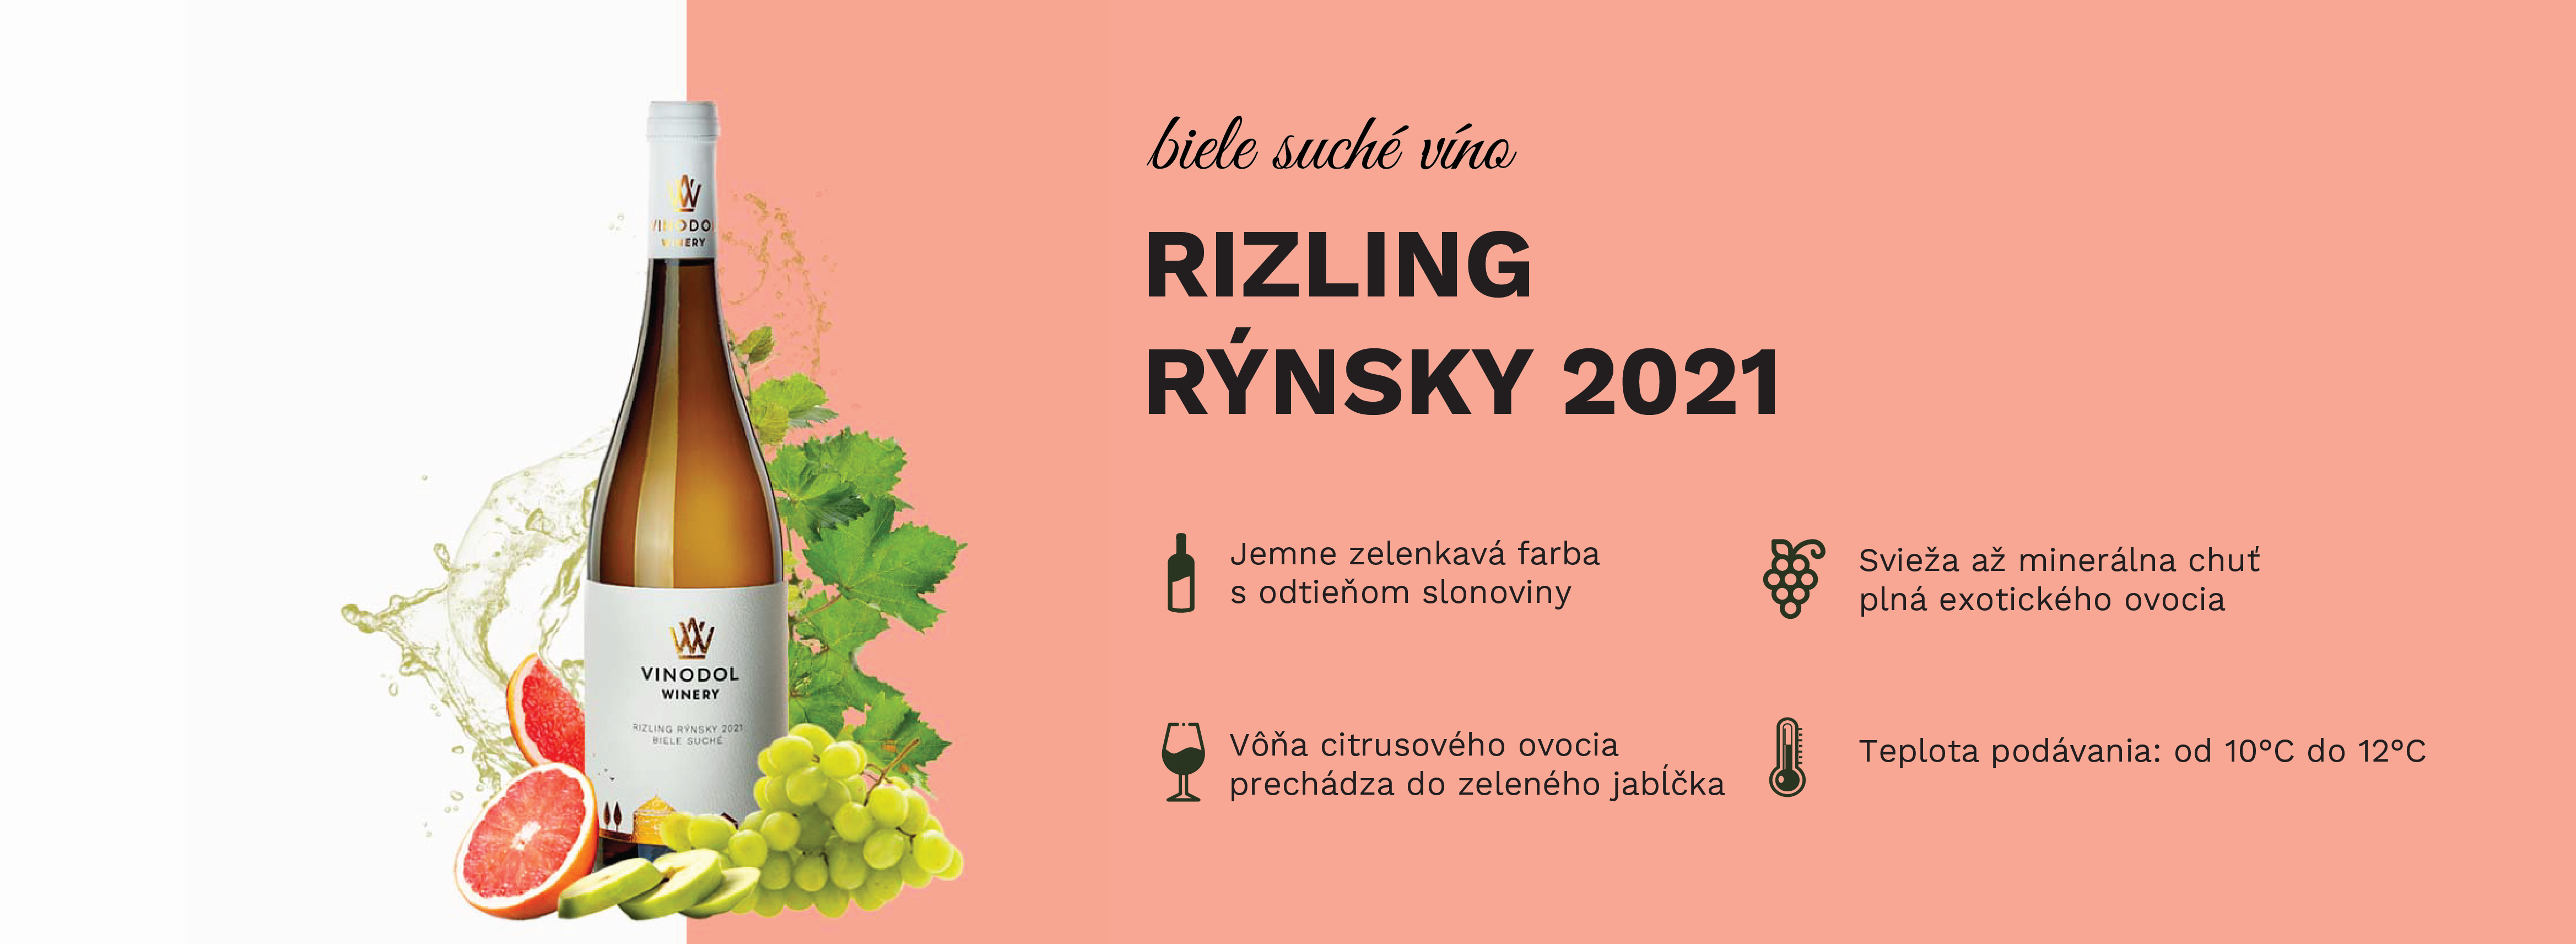 Rizling rýnsky 2021